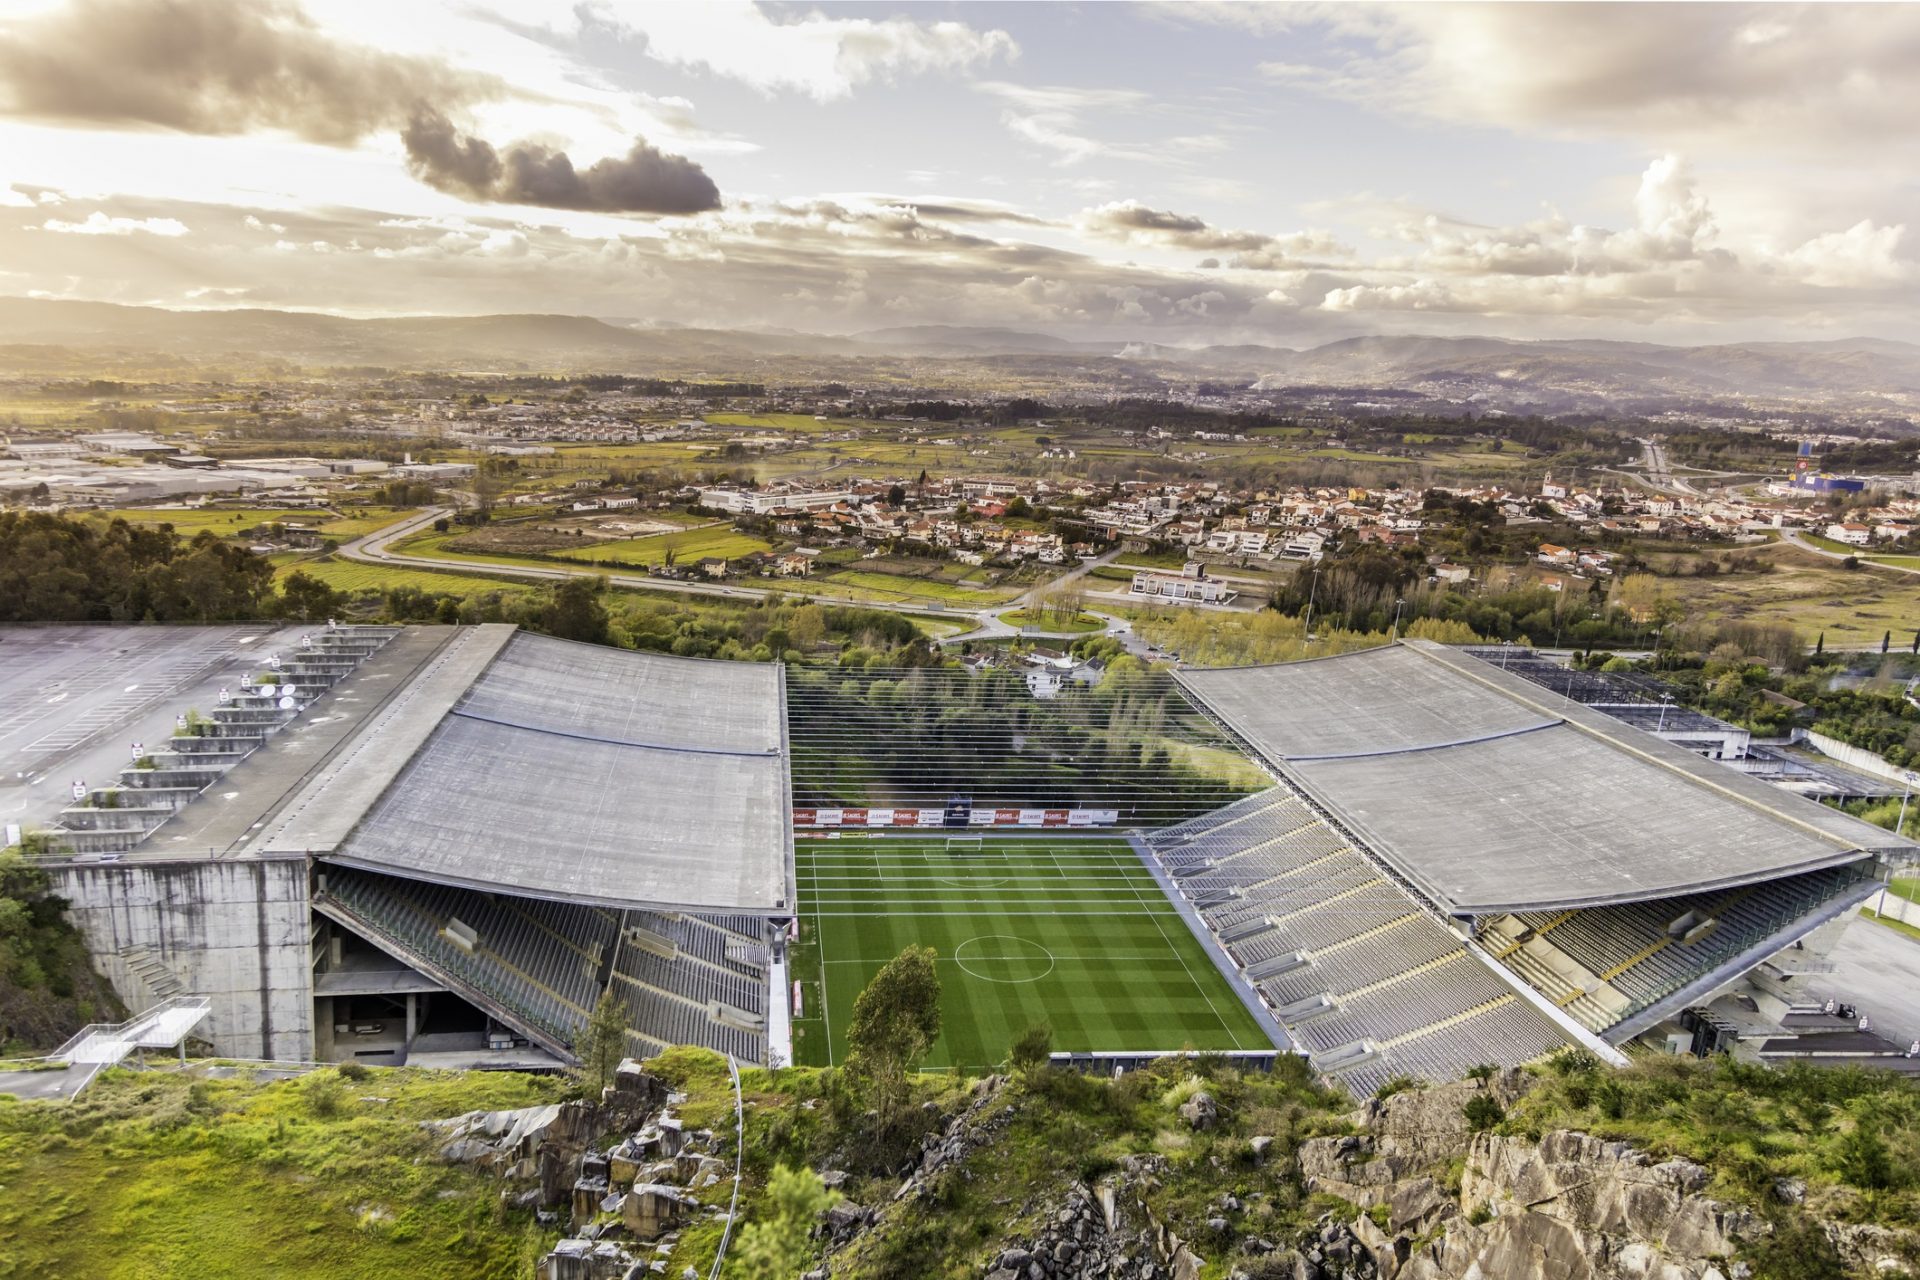 Das Stadion von Braga ist ein architektonisches Meisterwek